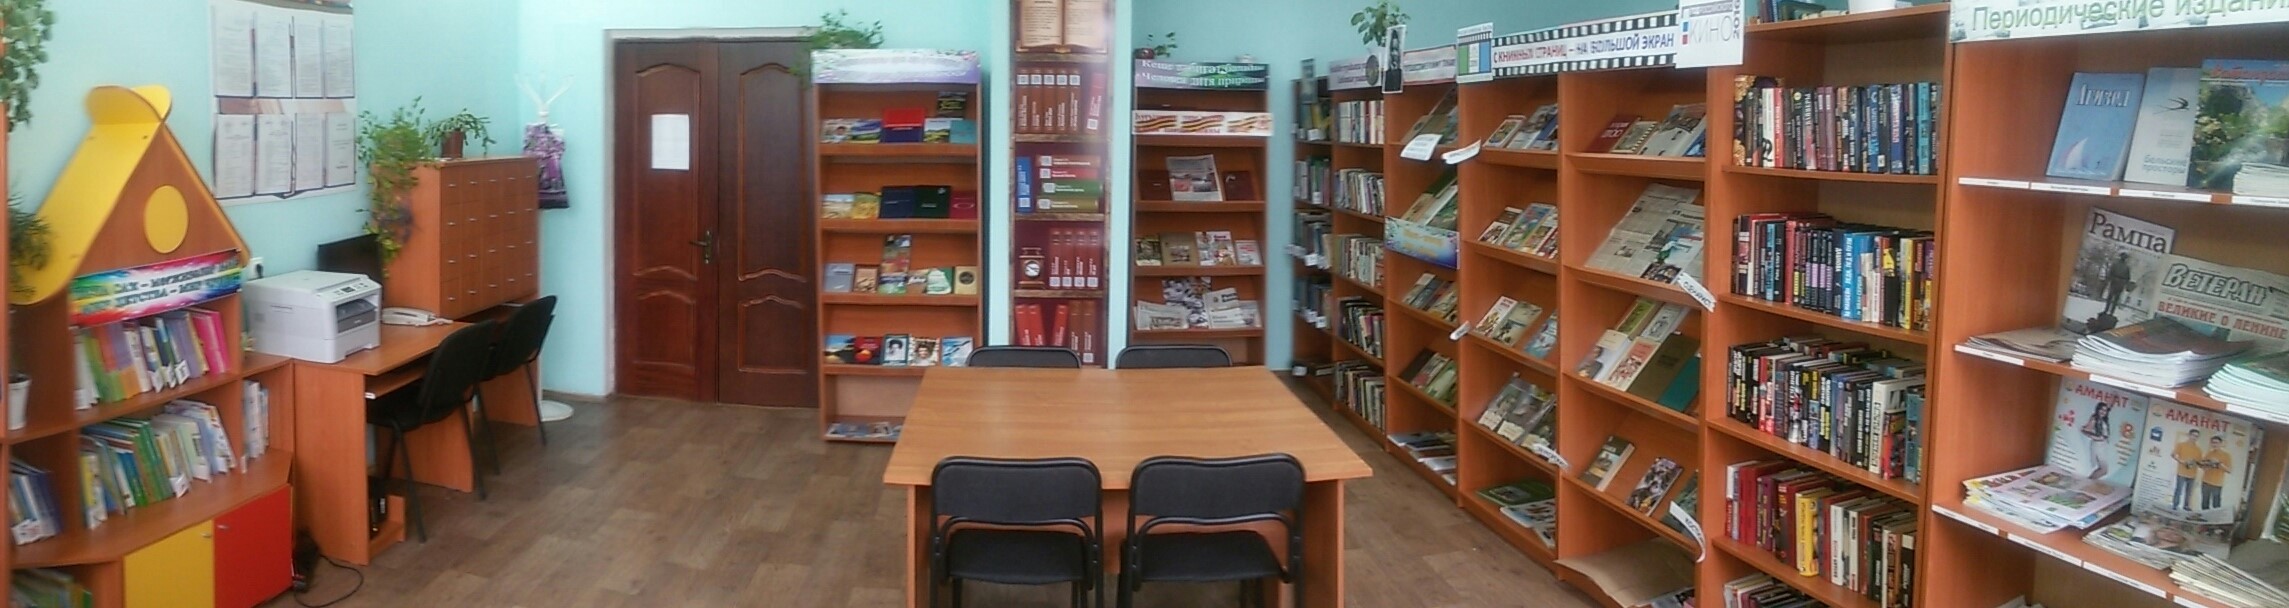 Савалеевская сельская библиотека